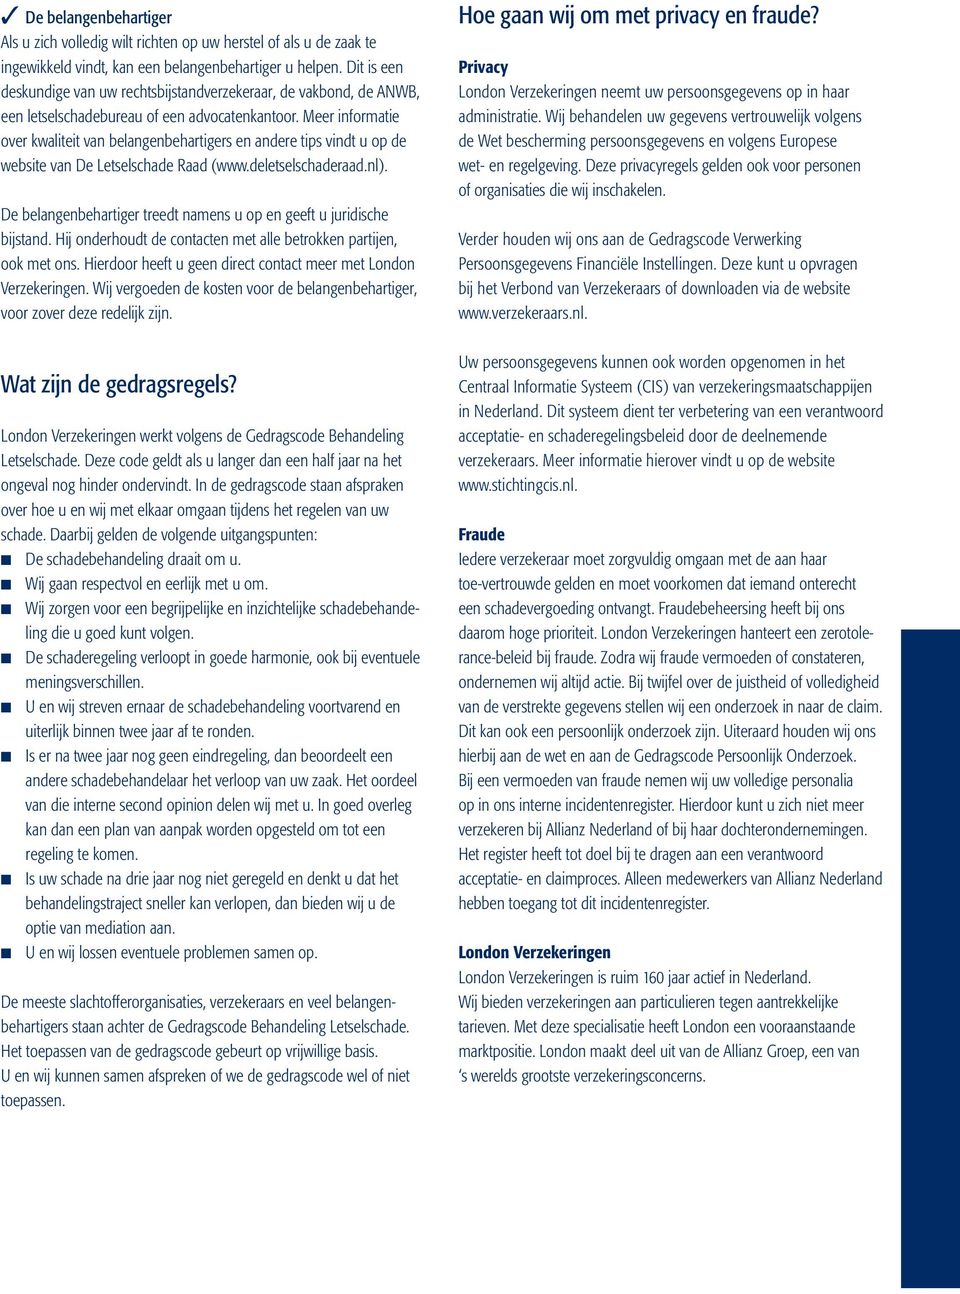 Meer informatie over kwaliteit van belangenbehartigers en andere tips vindt u op de website van De Letselschade Raad (www.deletselschaderaad.nl).